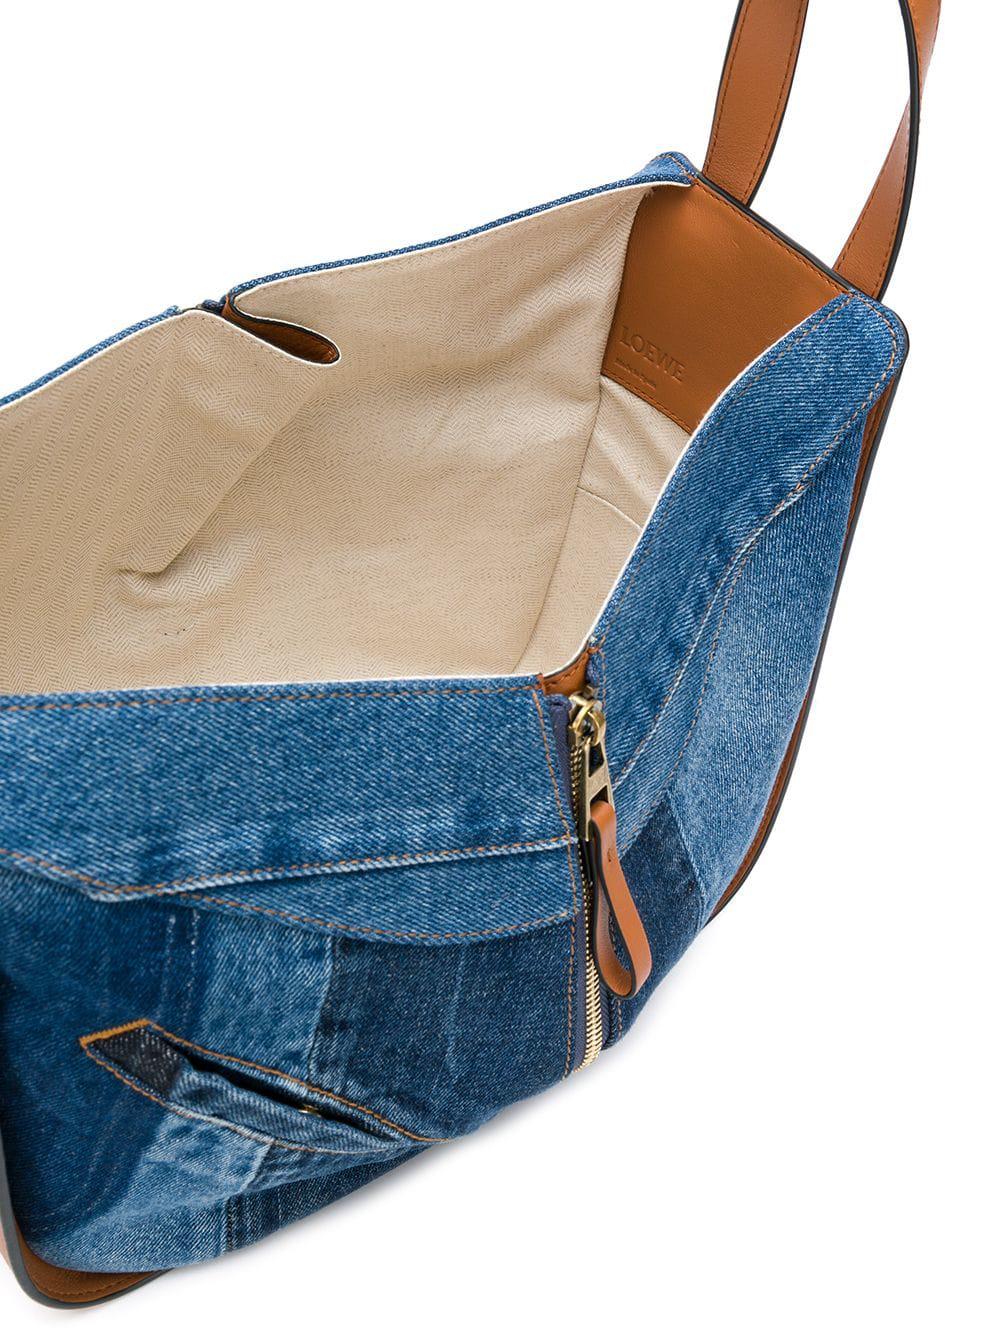 New Loewe Hammock DW Sailor Small Shoulder Bag, BLUE/WHITE MSRP $2550